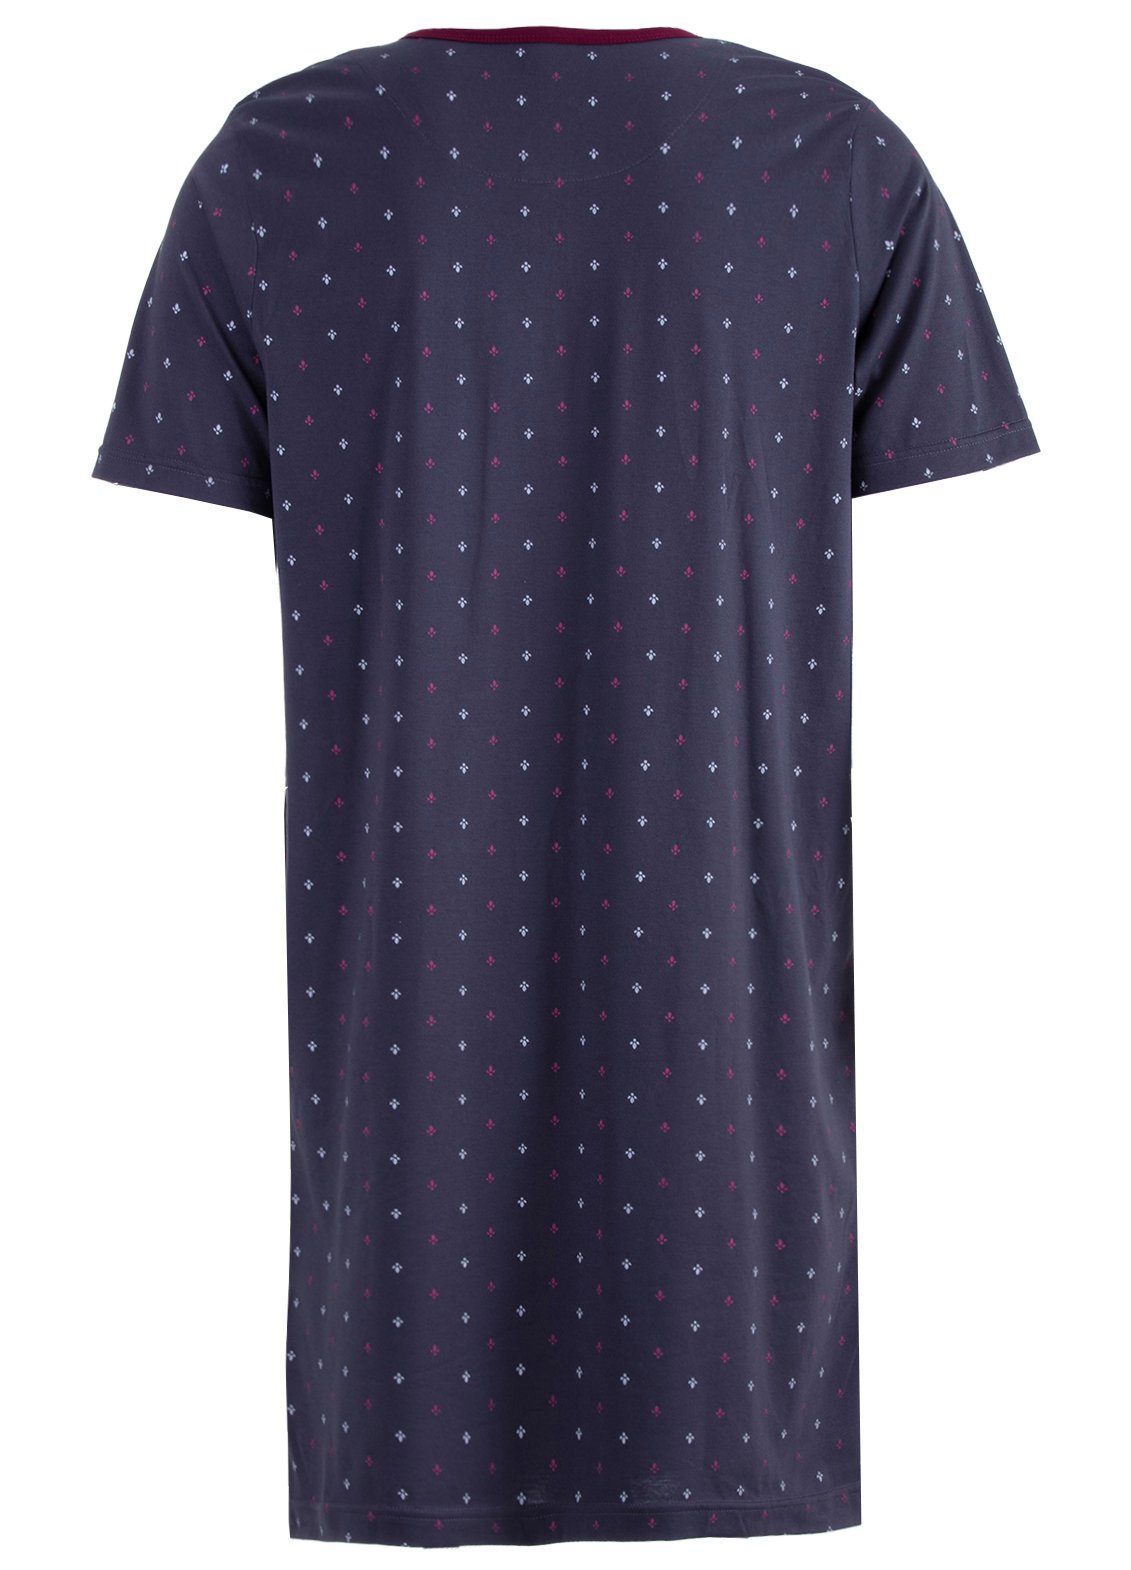 Henry Terre Nachthemd Nachthemd Kurzarm - anthrazit Blatt